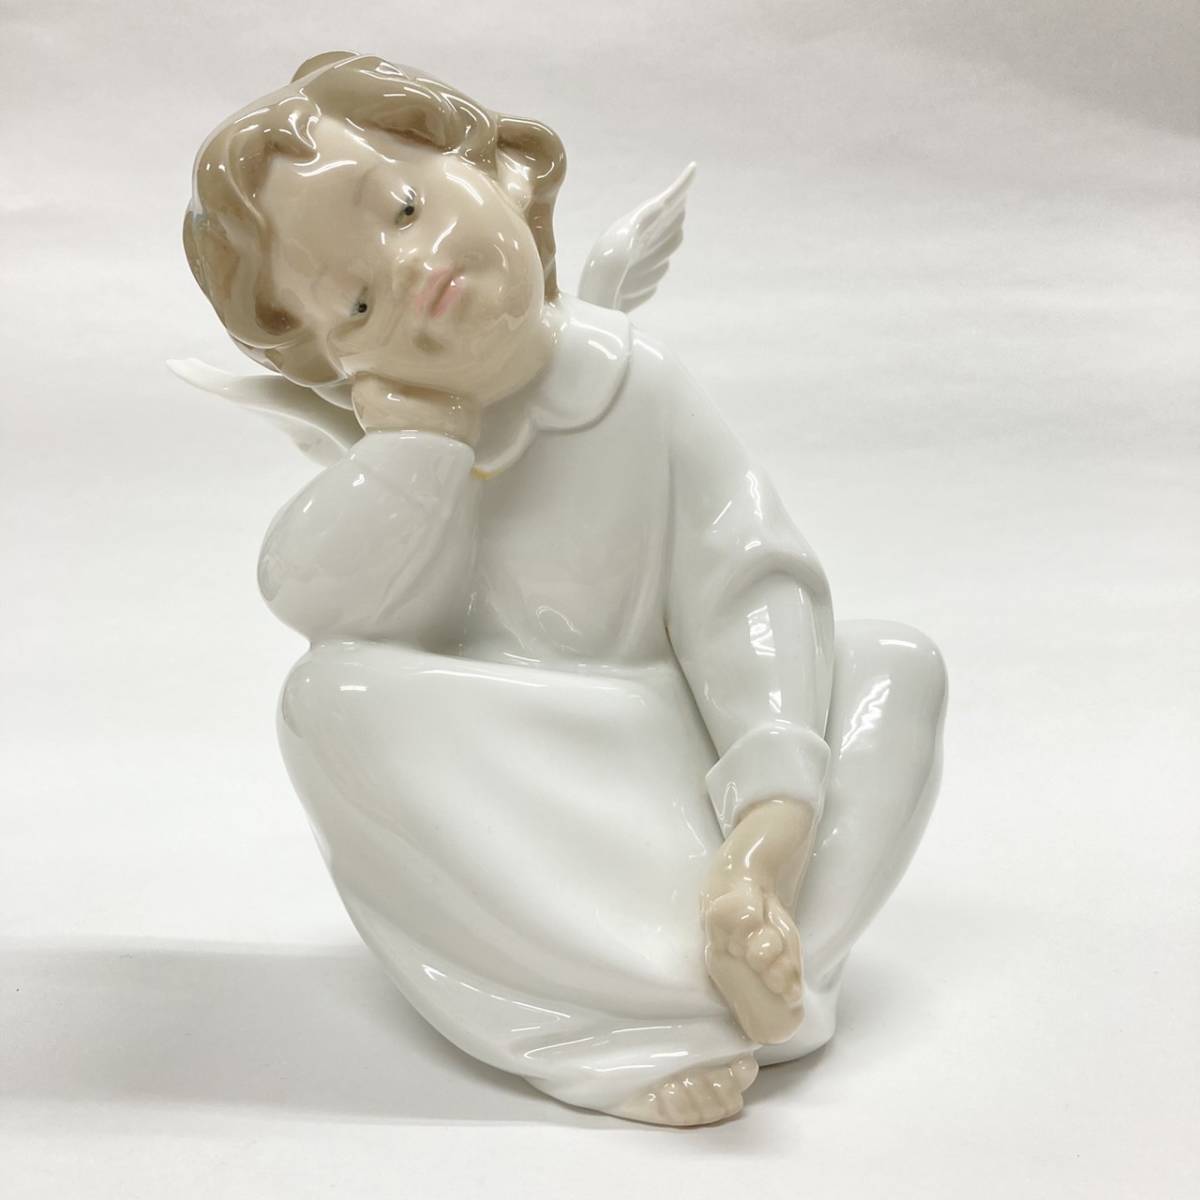 LLADRO(リヤドロ) フィギュリン 陶器人形 陶磁器 天使の考え事 エンジェル Angel dreaming [4961]_画像2